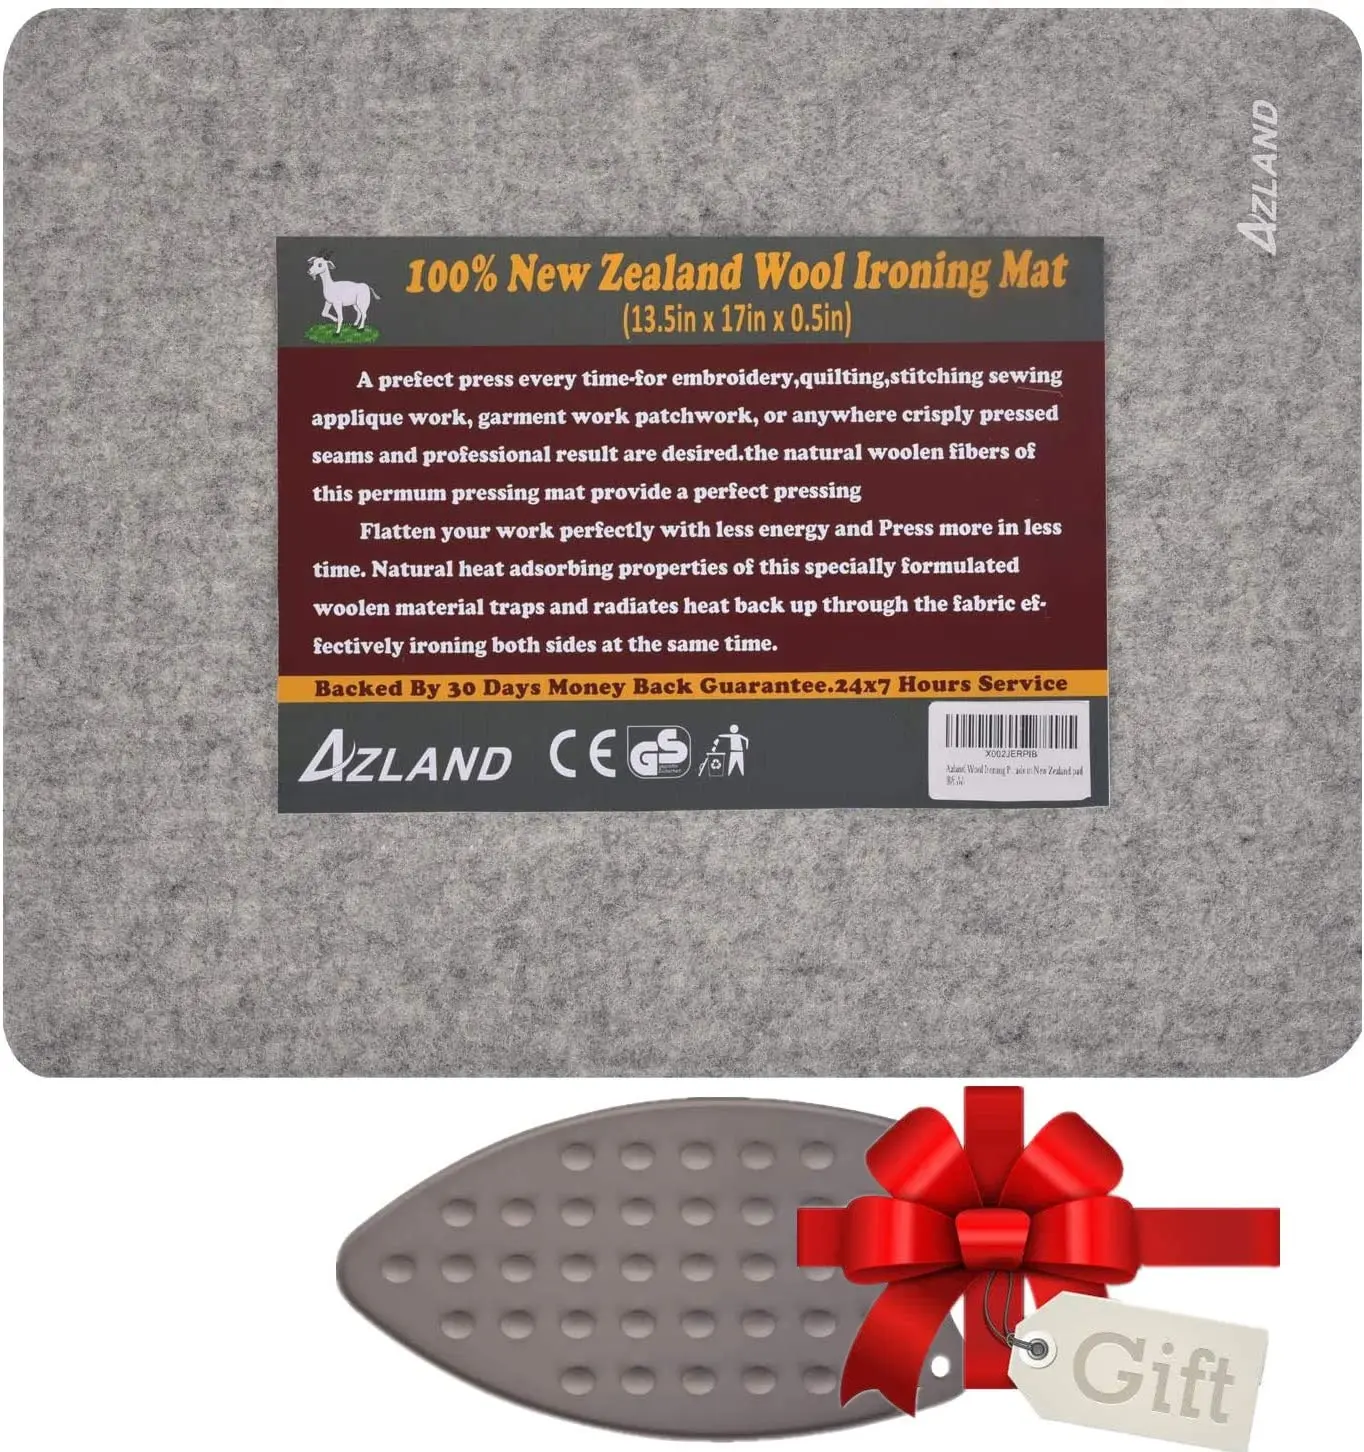 Tabla de planchar de fieltro de lana Miracle para planchar tabla de planchar de fieltro para edredones almohadilla de planchado de lana almohadilla de planchado de lana de Nueva Zelanda 